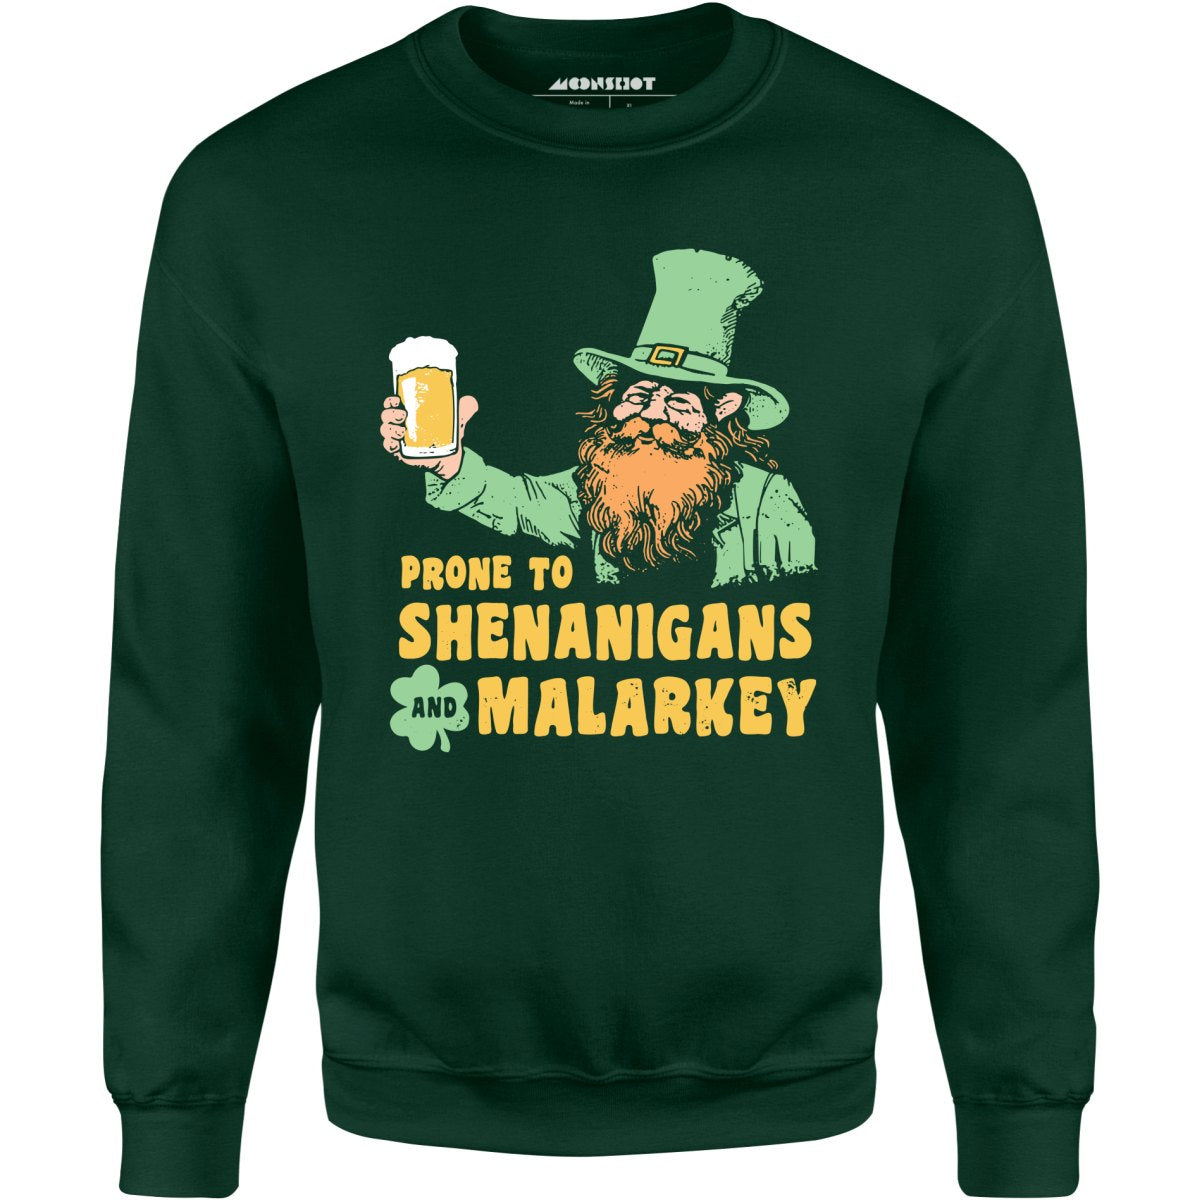 Prone to Shenanigans and Malarkey - Unisex Sweatshirt